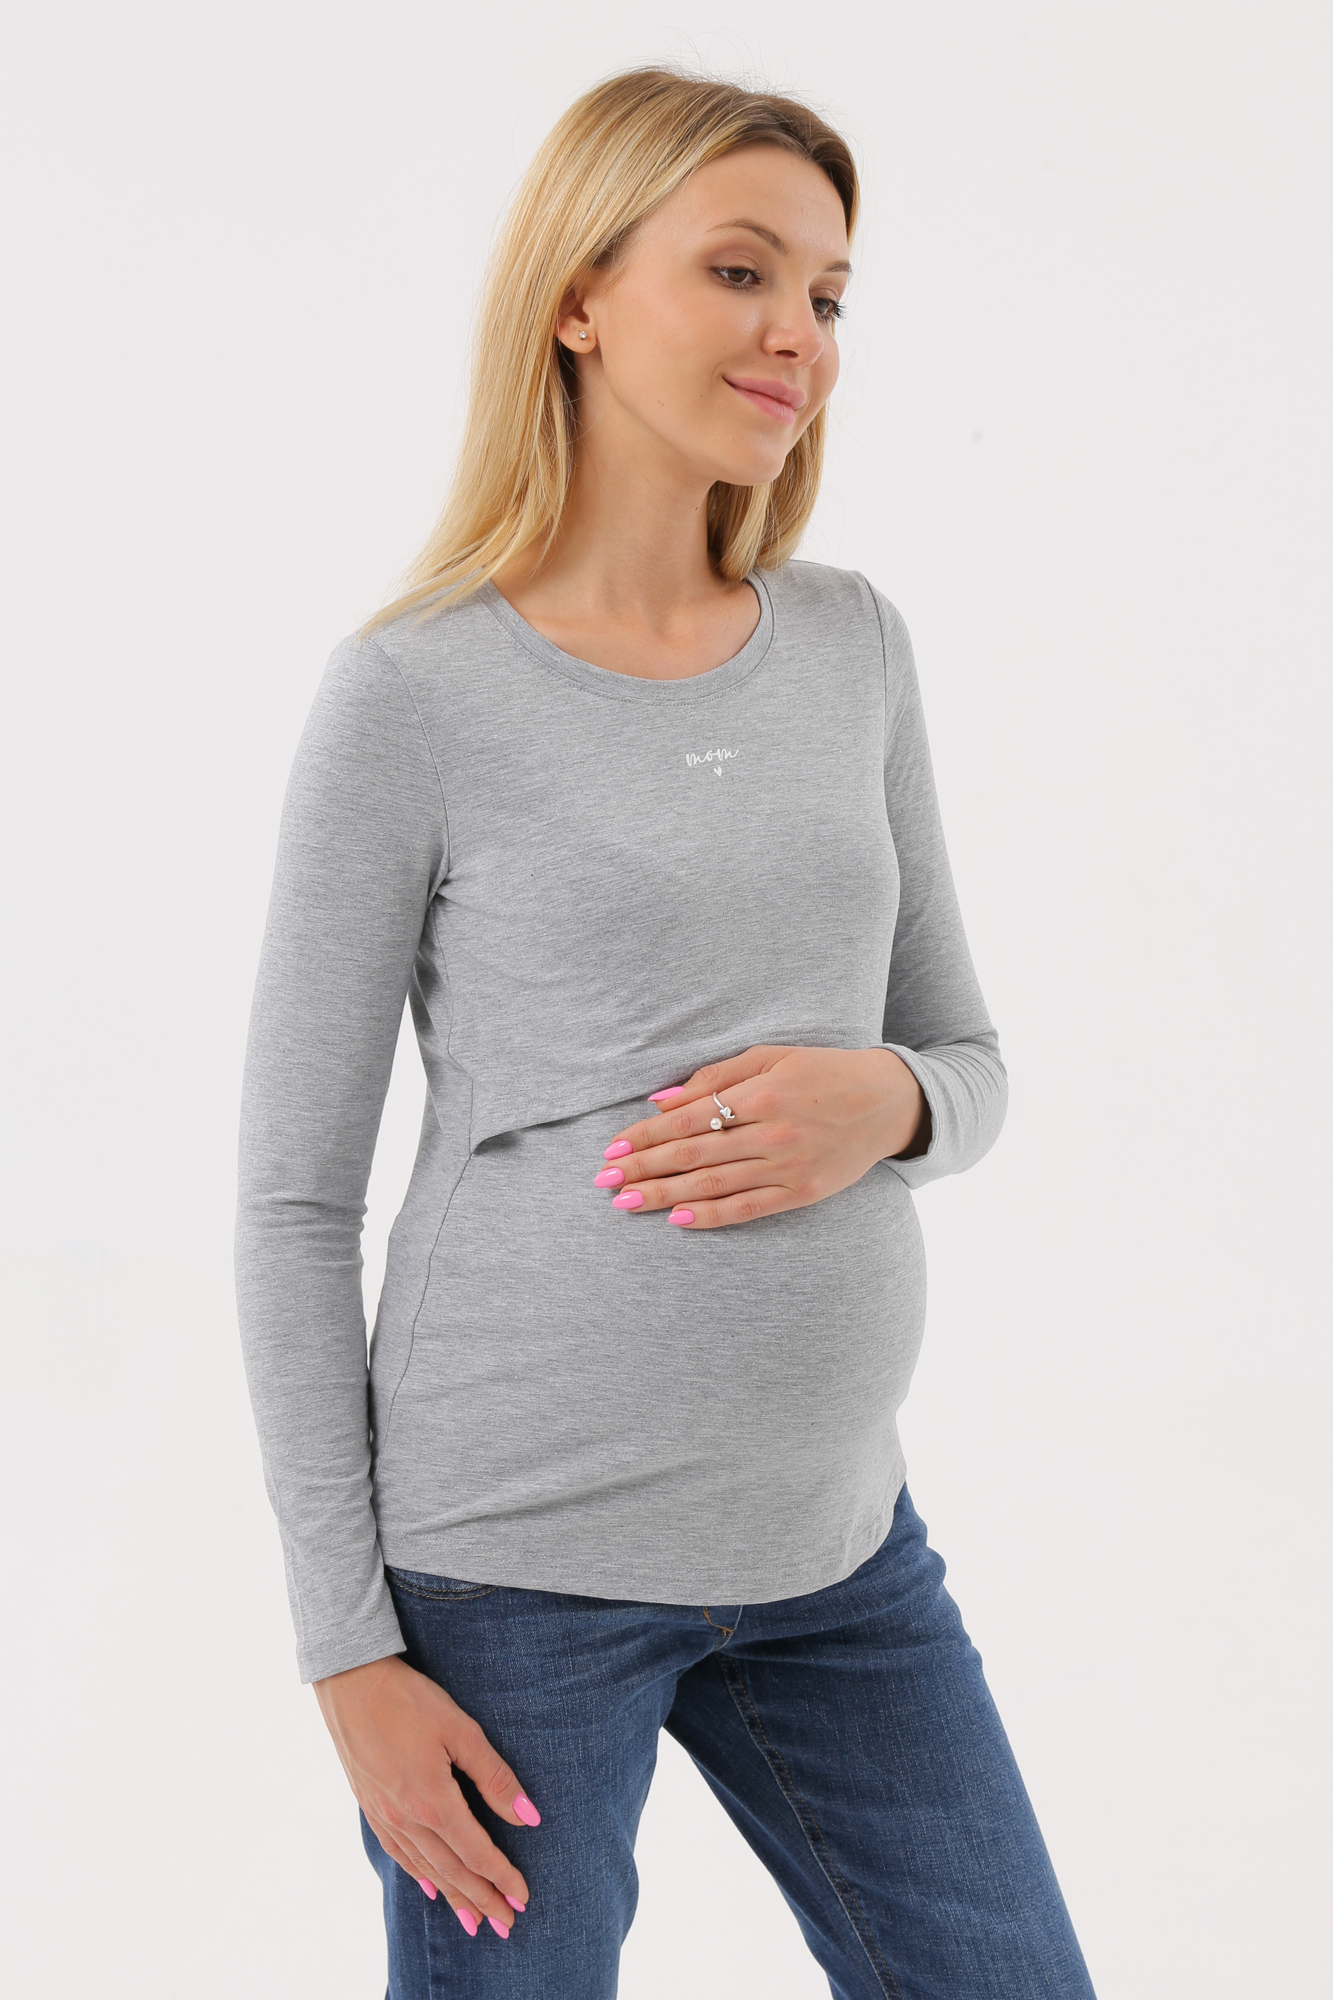 Лонгслив для беременных женский Magica bellezza МВ7038 серый 52 RU